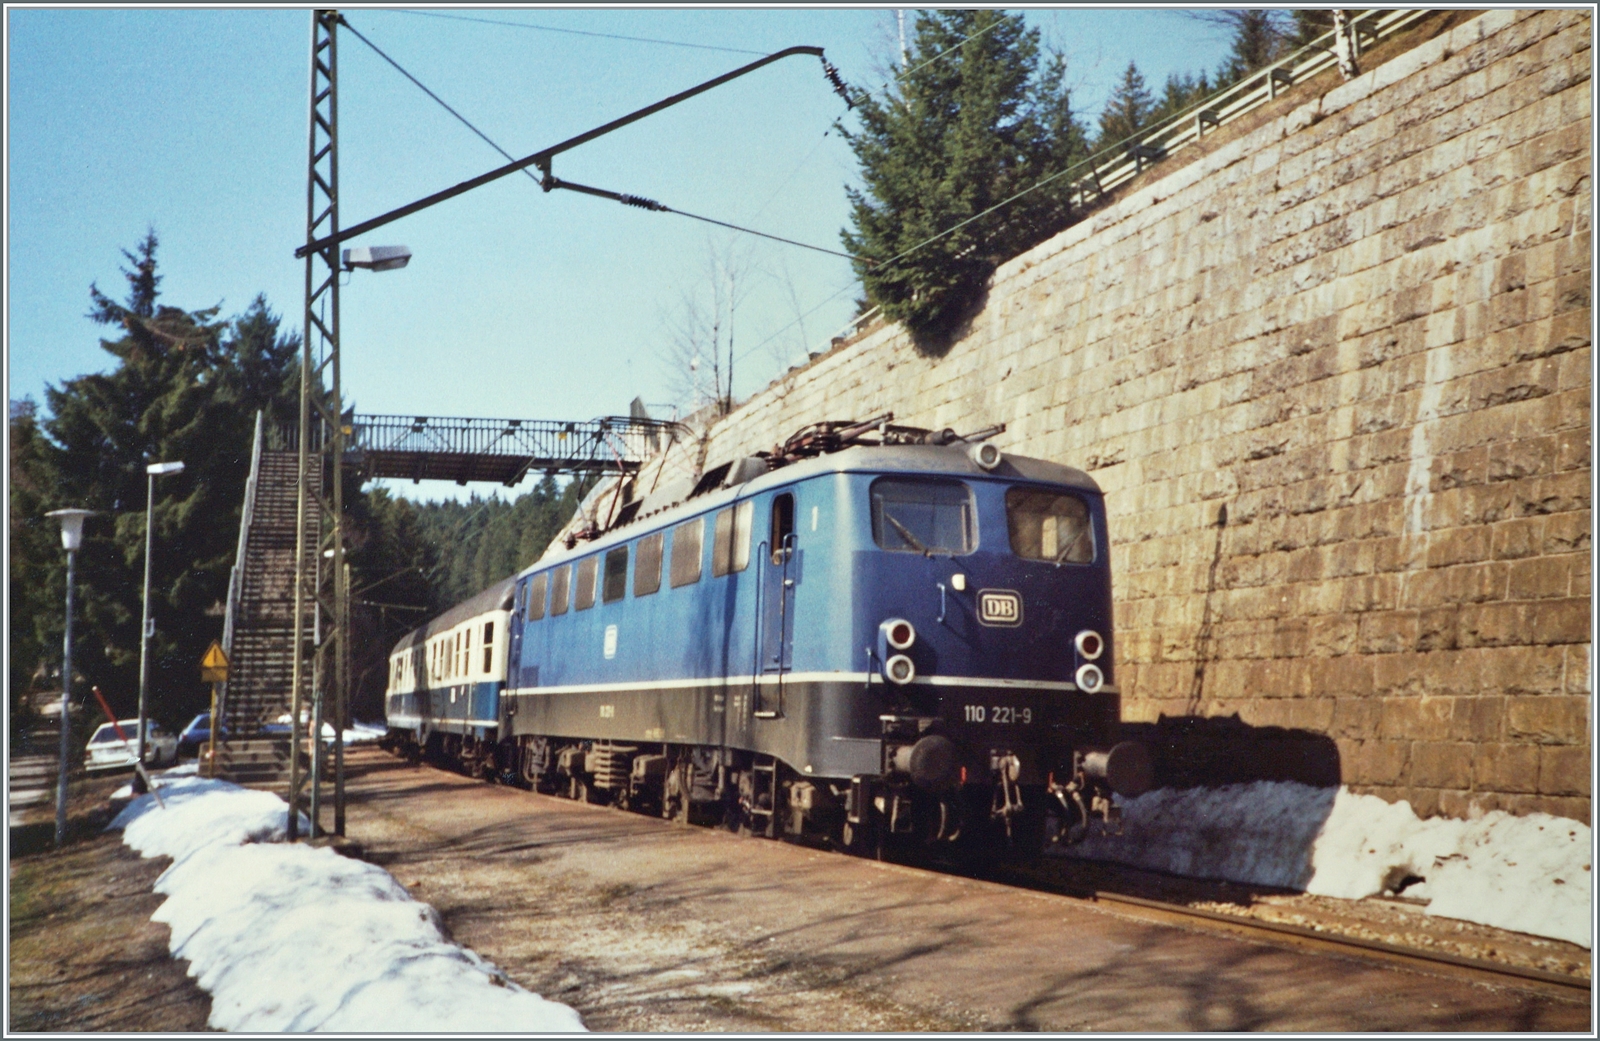 Die DB 110 221-9 erreicht mit ihrem FD 703 von Münter (Westfallen) kommend den Zielbahnhof Seebrugg. 
Der FD 703  Bodensee verkehrte von Münster (ab 7:06) nach Konstanz (an 15:55) führte neben den vier Bm einen Speisewagen WRbumz einen klimatisierten 1. Klassenwagen Avm. Kurzwagen gruppen fuhren nach Lindau, Basel und wie hier im Bild nach Seebrugg.

Analogbild vom April 1988 